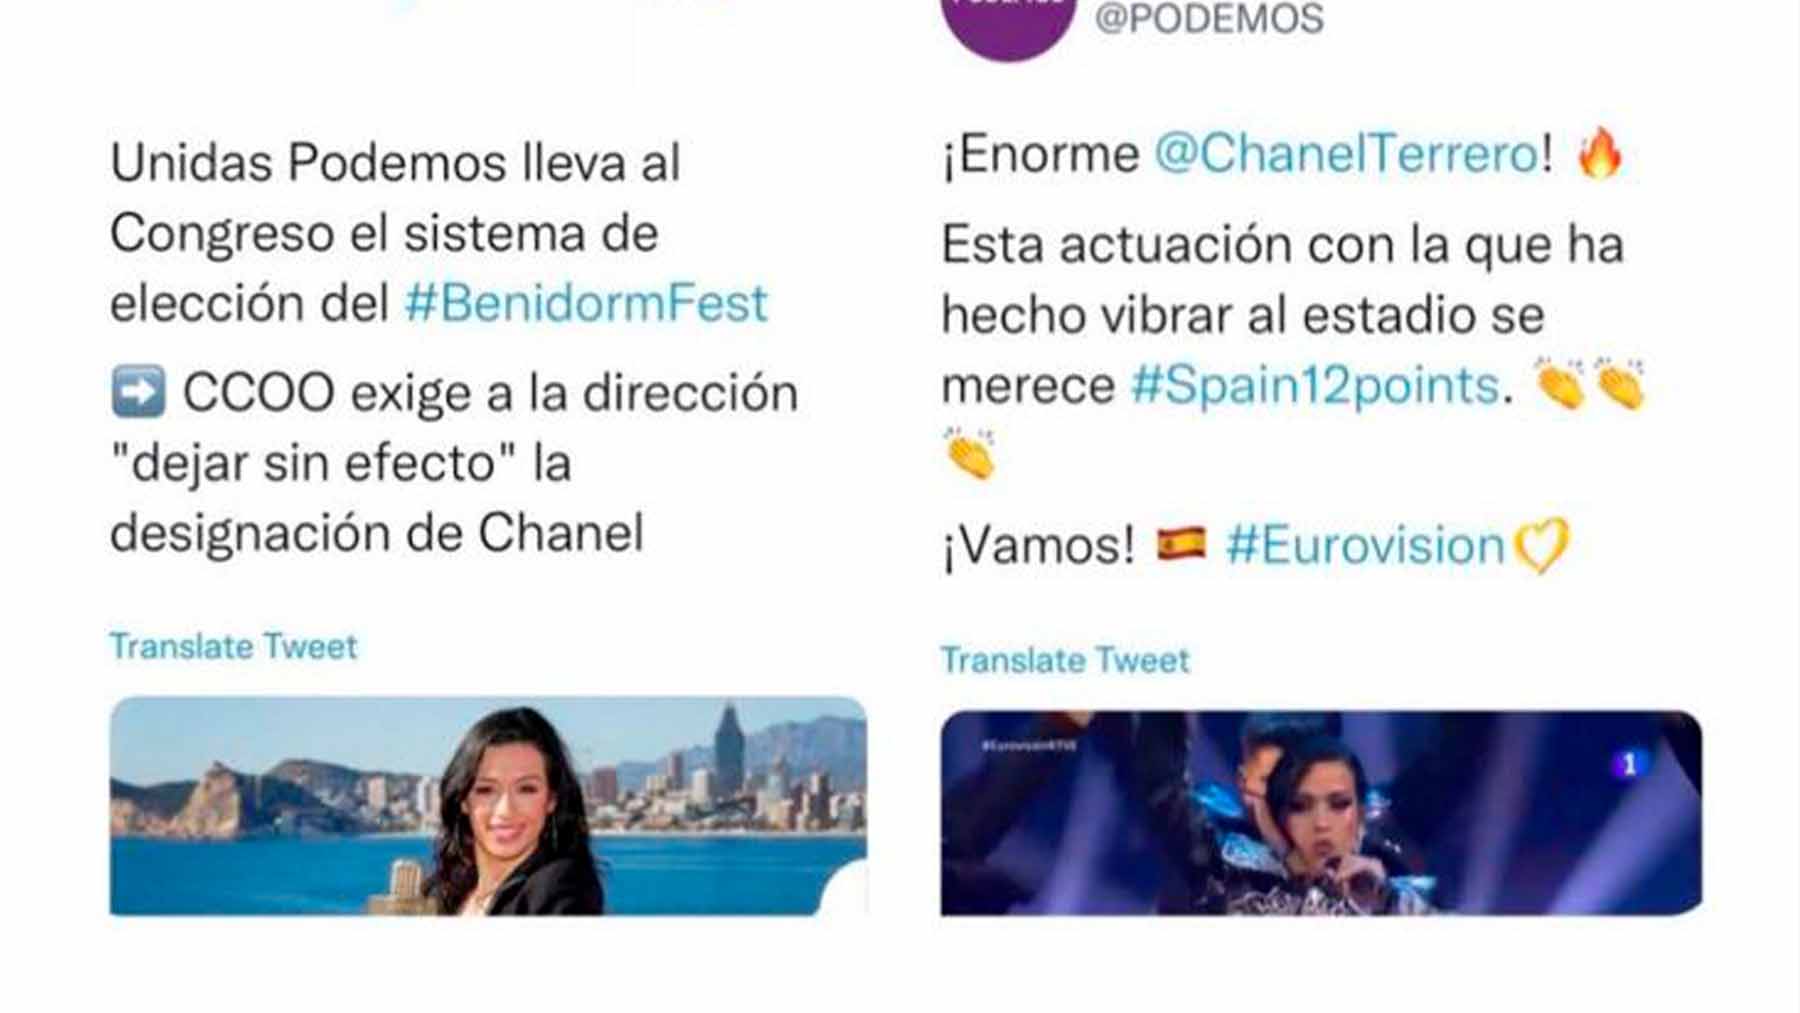 Tuit de Podemos tras la actuacióin de Chanel